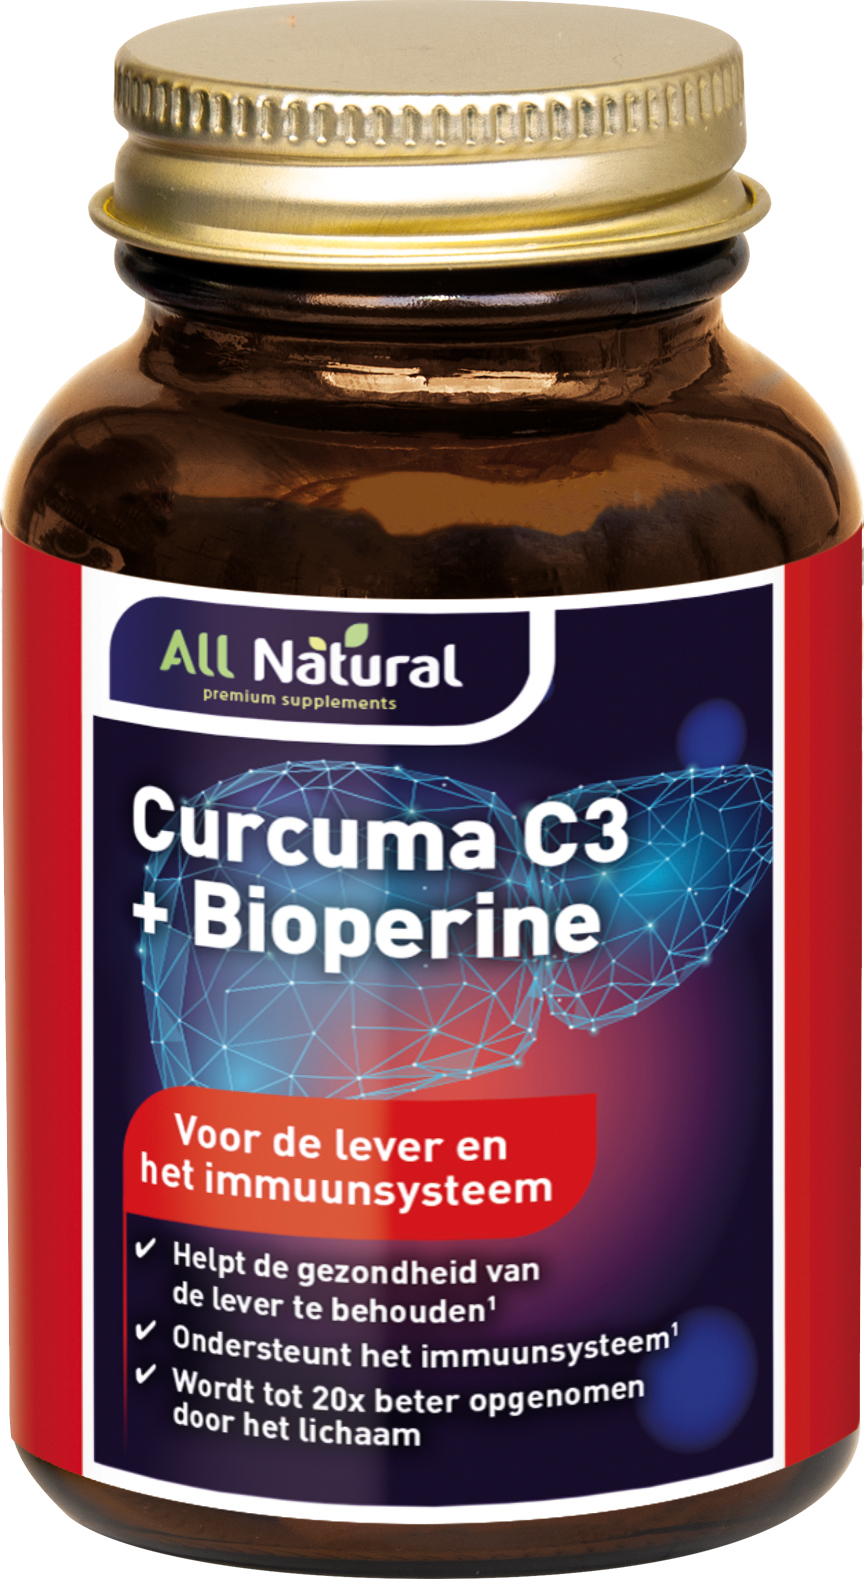 All Natural Curcuma C3 + Bioperine Capsules